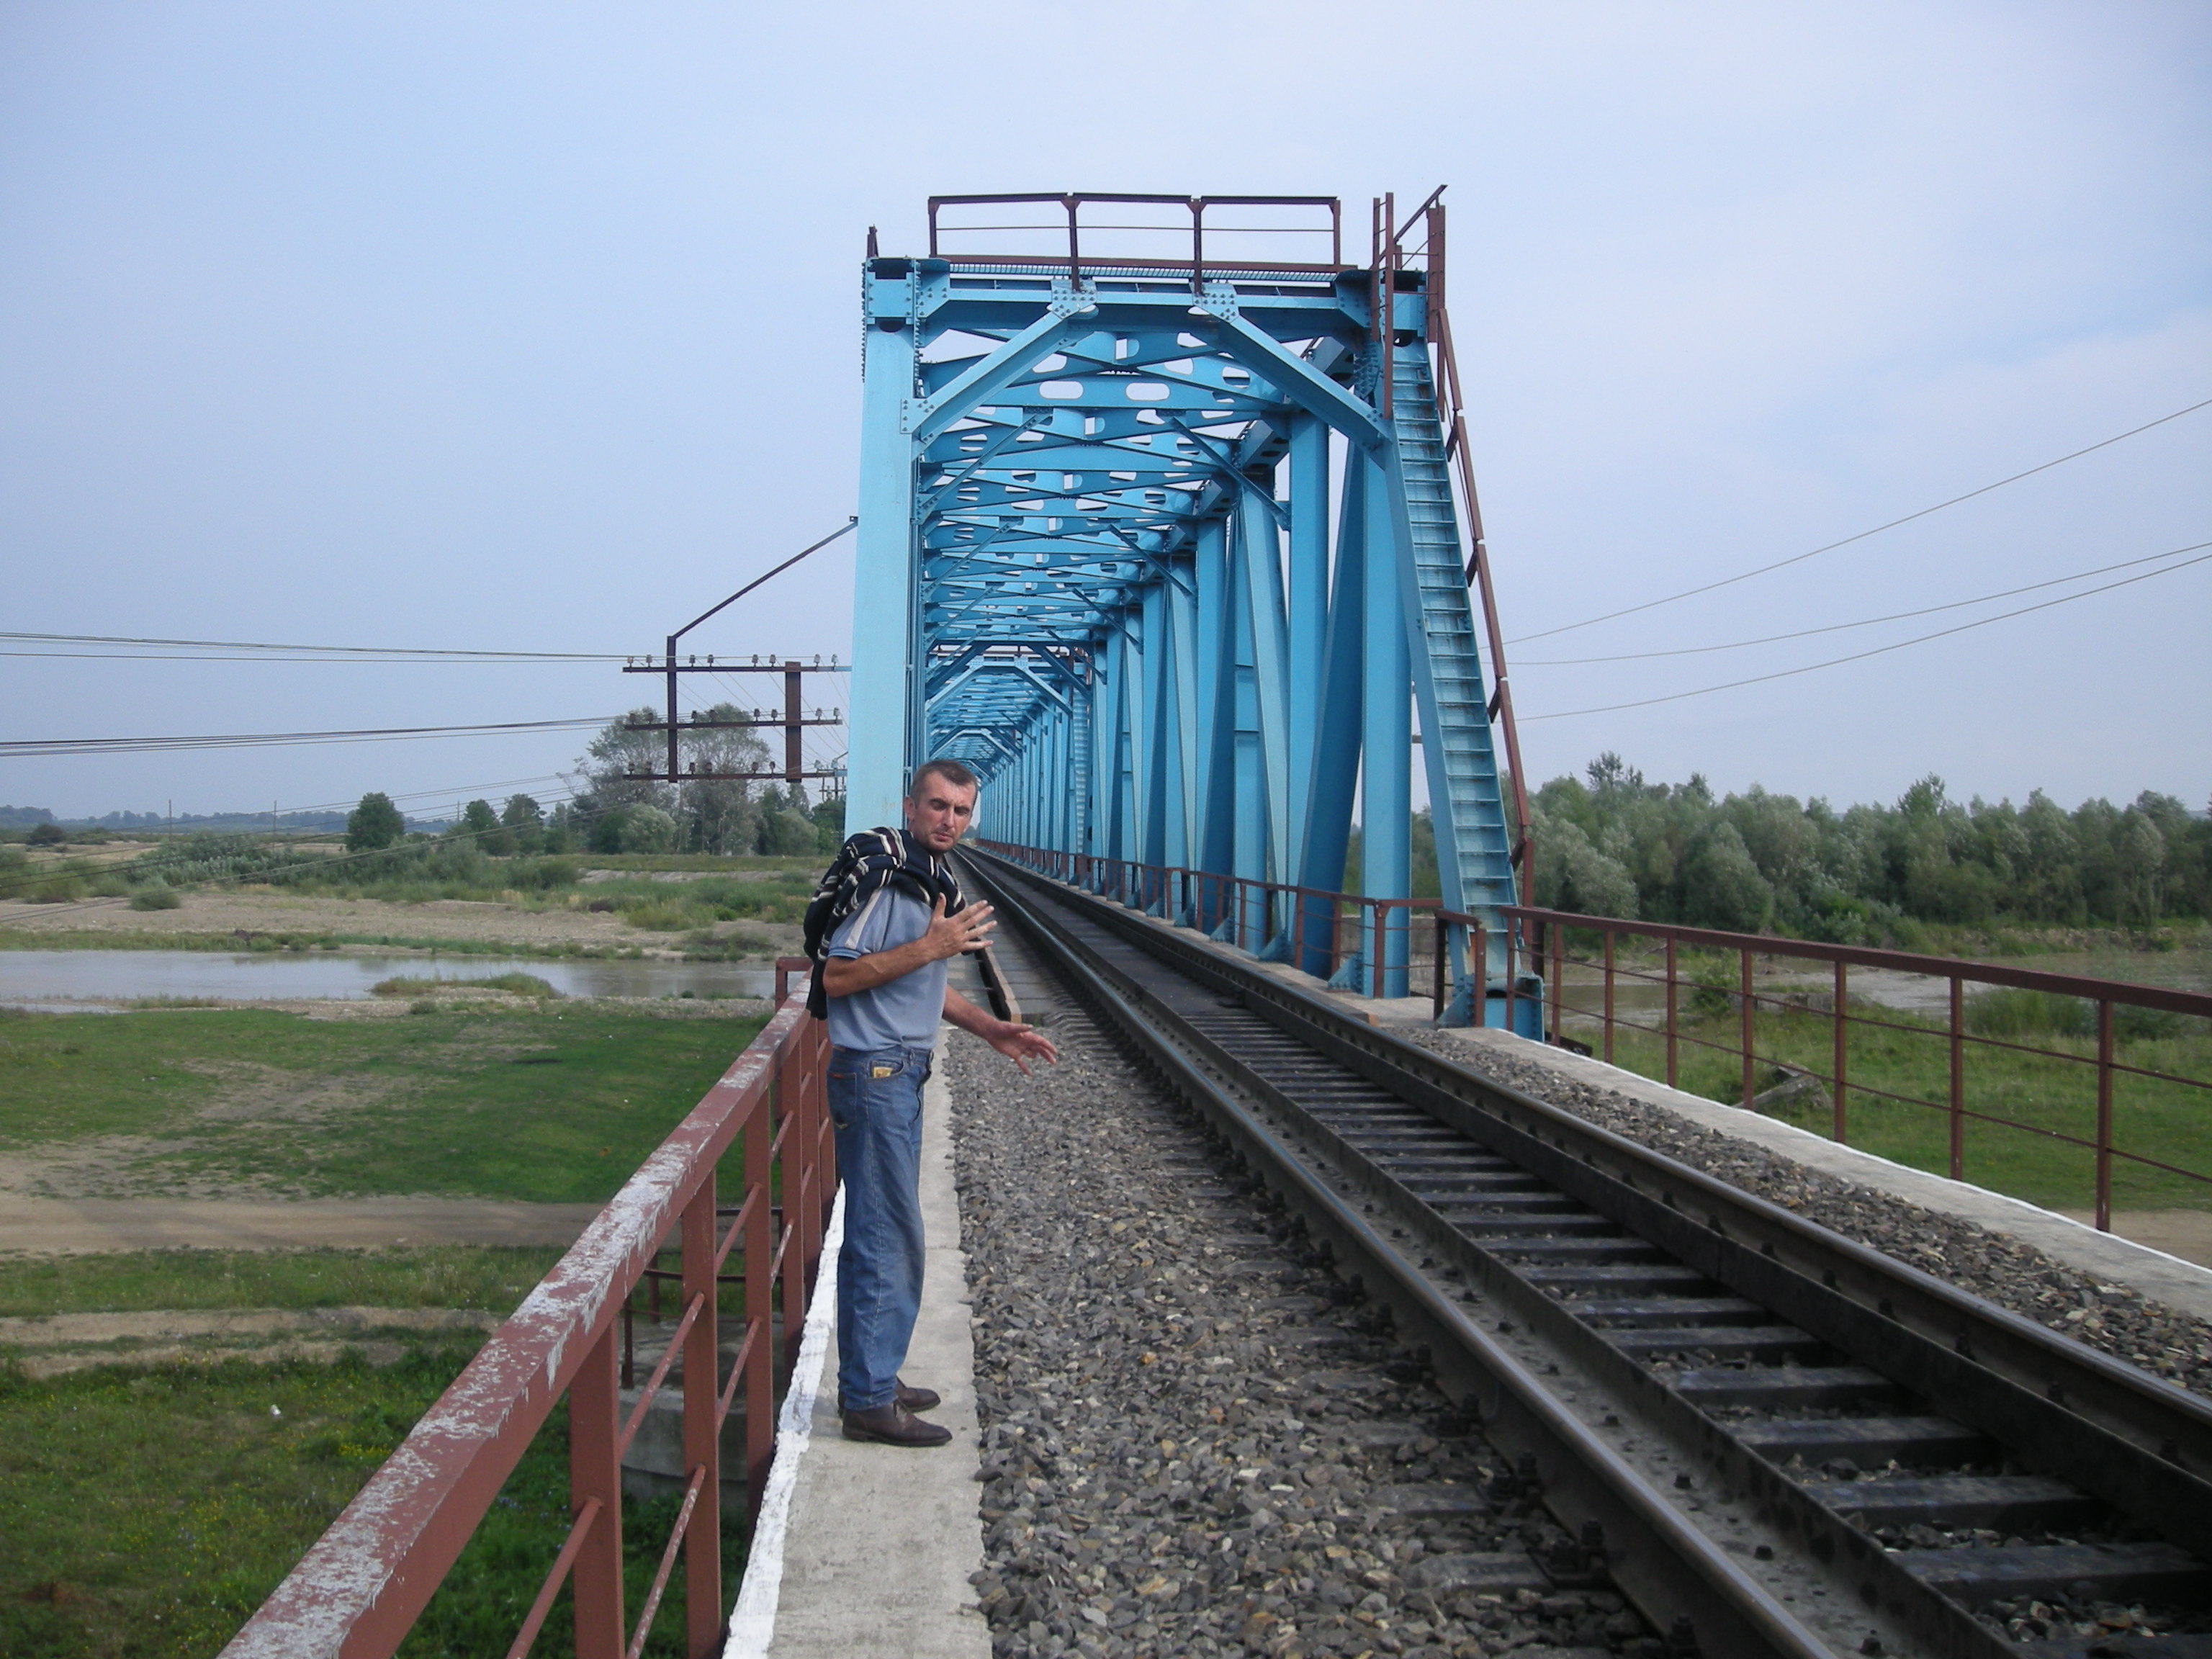 Järnvägsbron där Jareks morfar var anställd som järnvägsarbetare före andra världskriget.